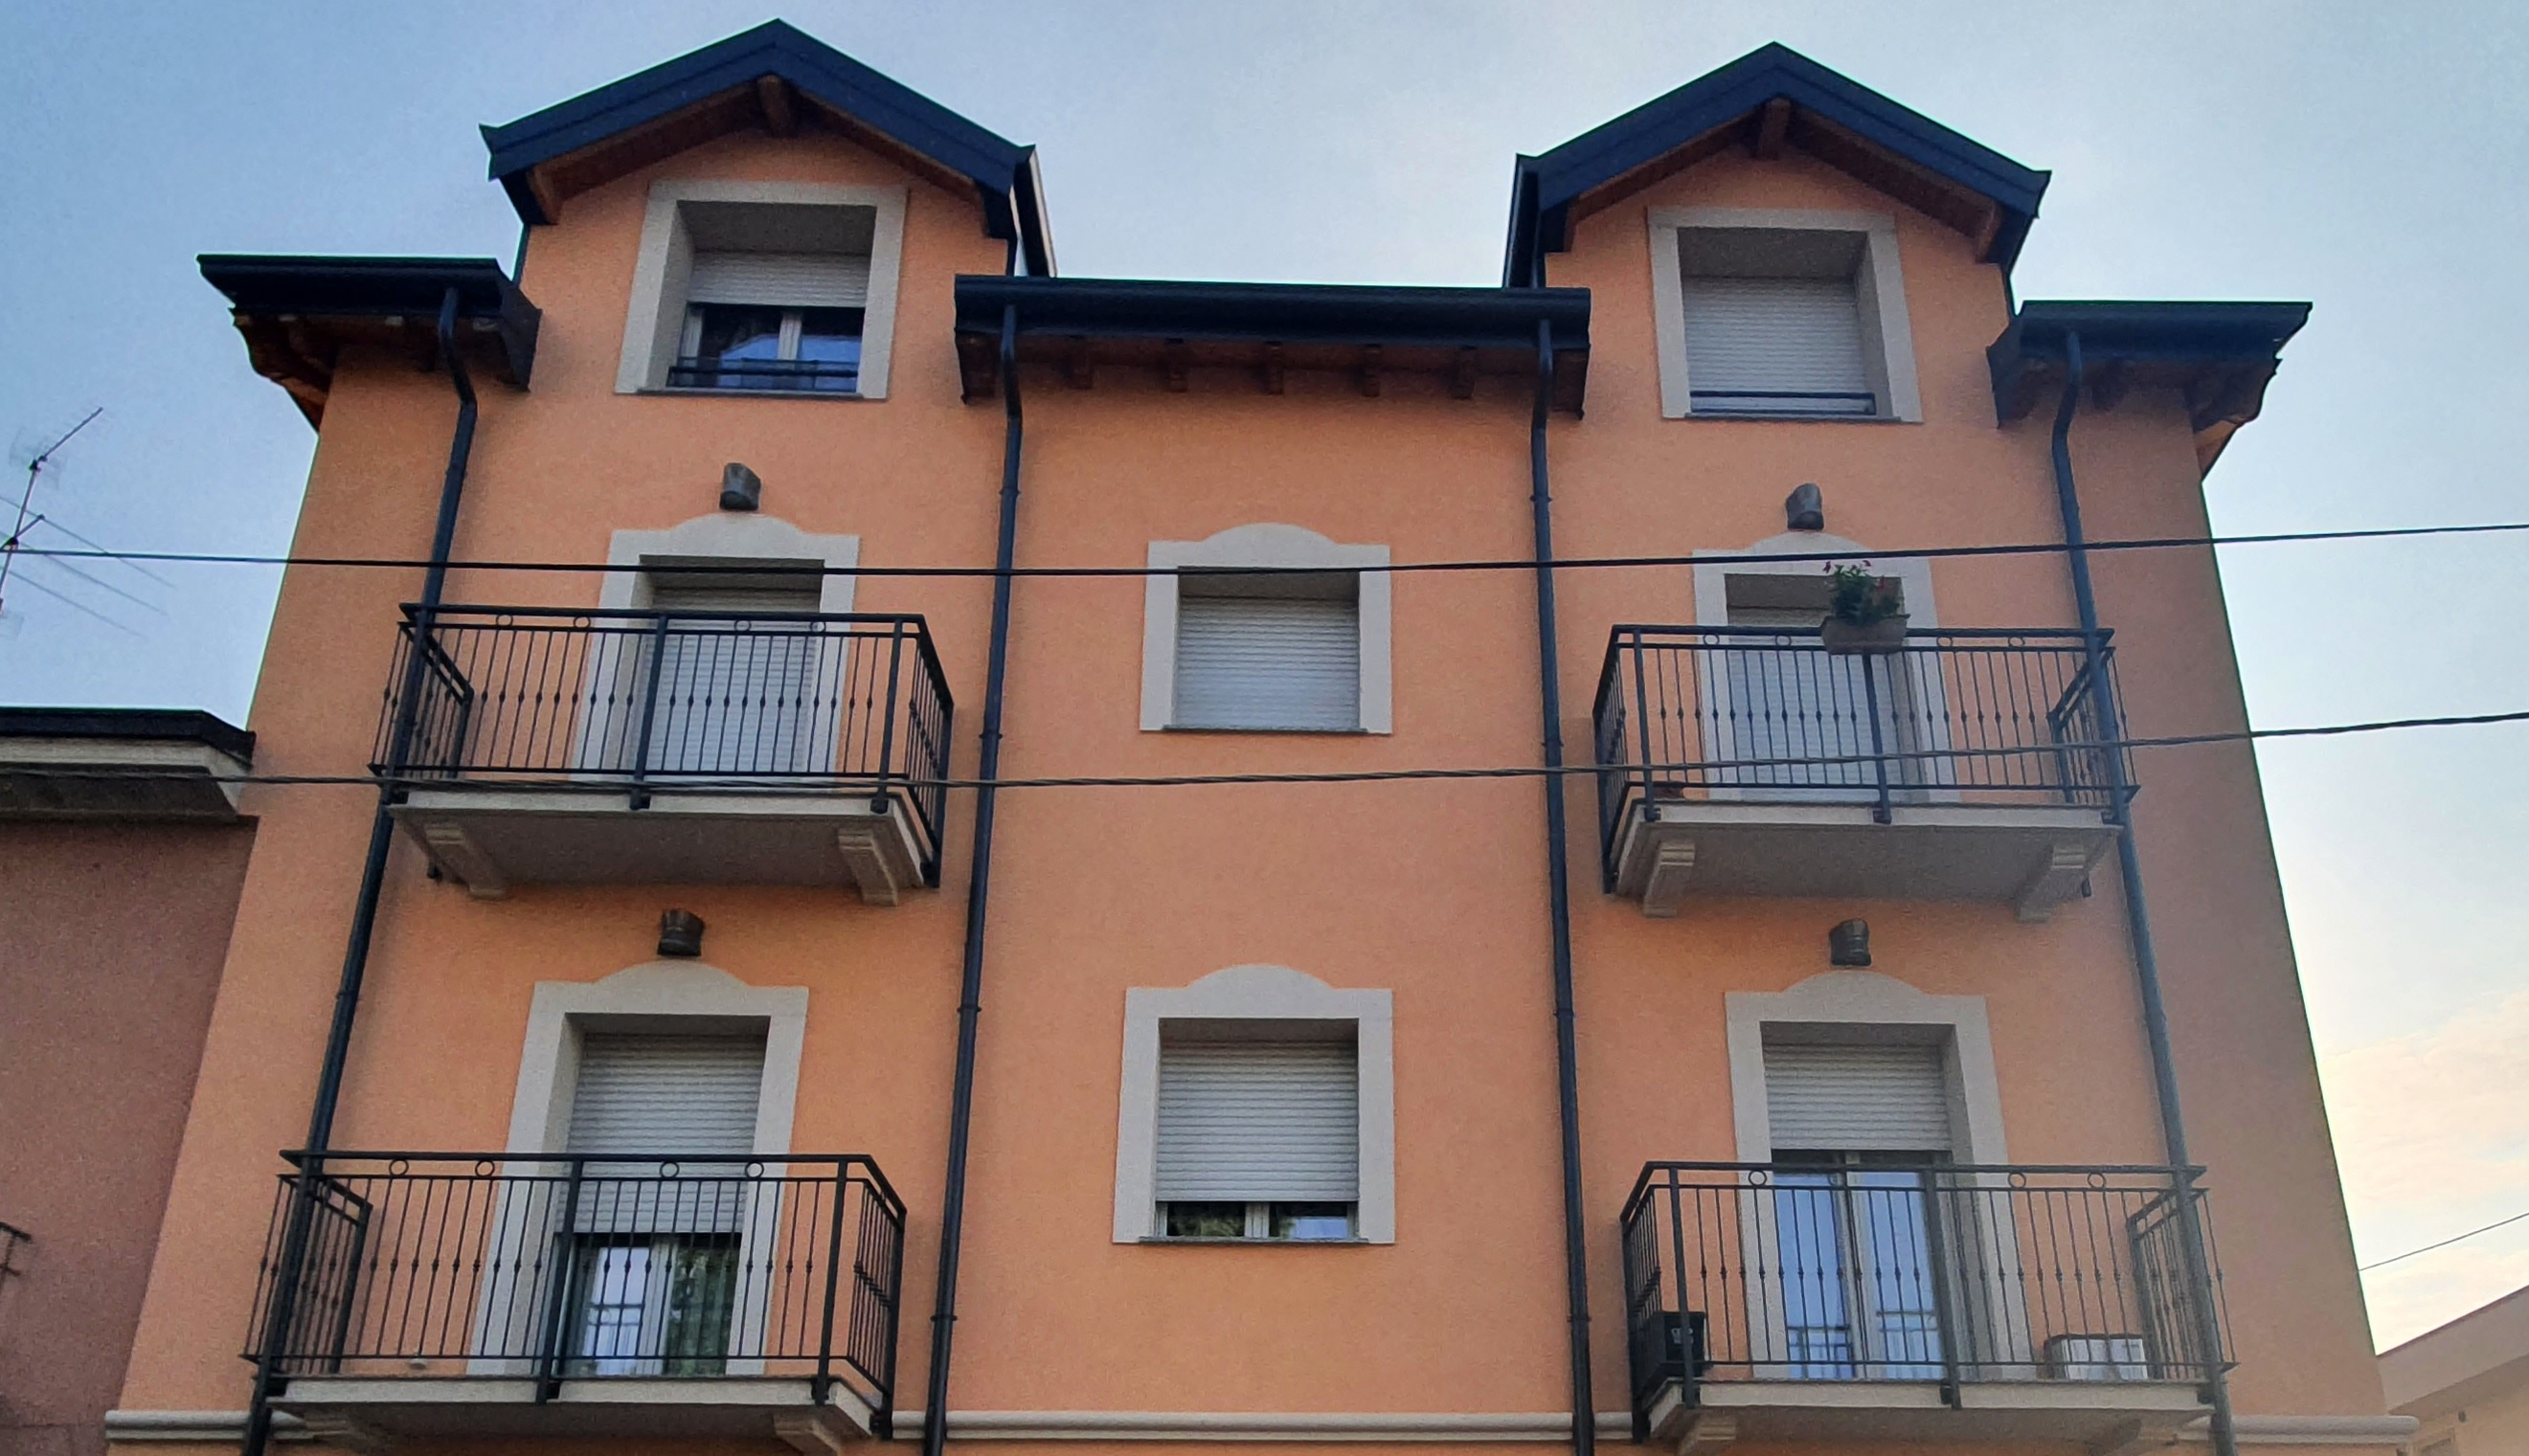 2019  Gorgonzola  (Milano) Recupero edificio in via Leonardo da Vinci: 6 unità residenziali